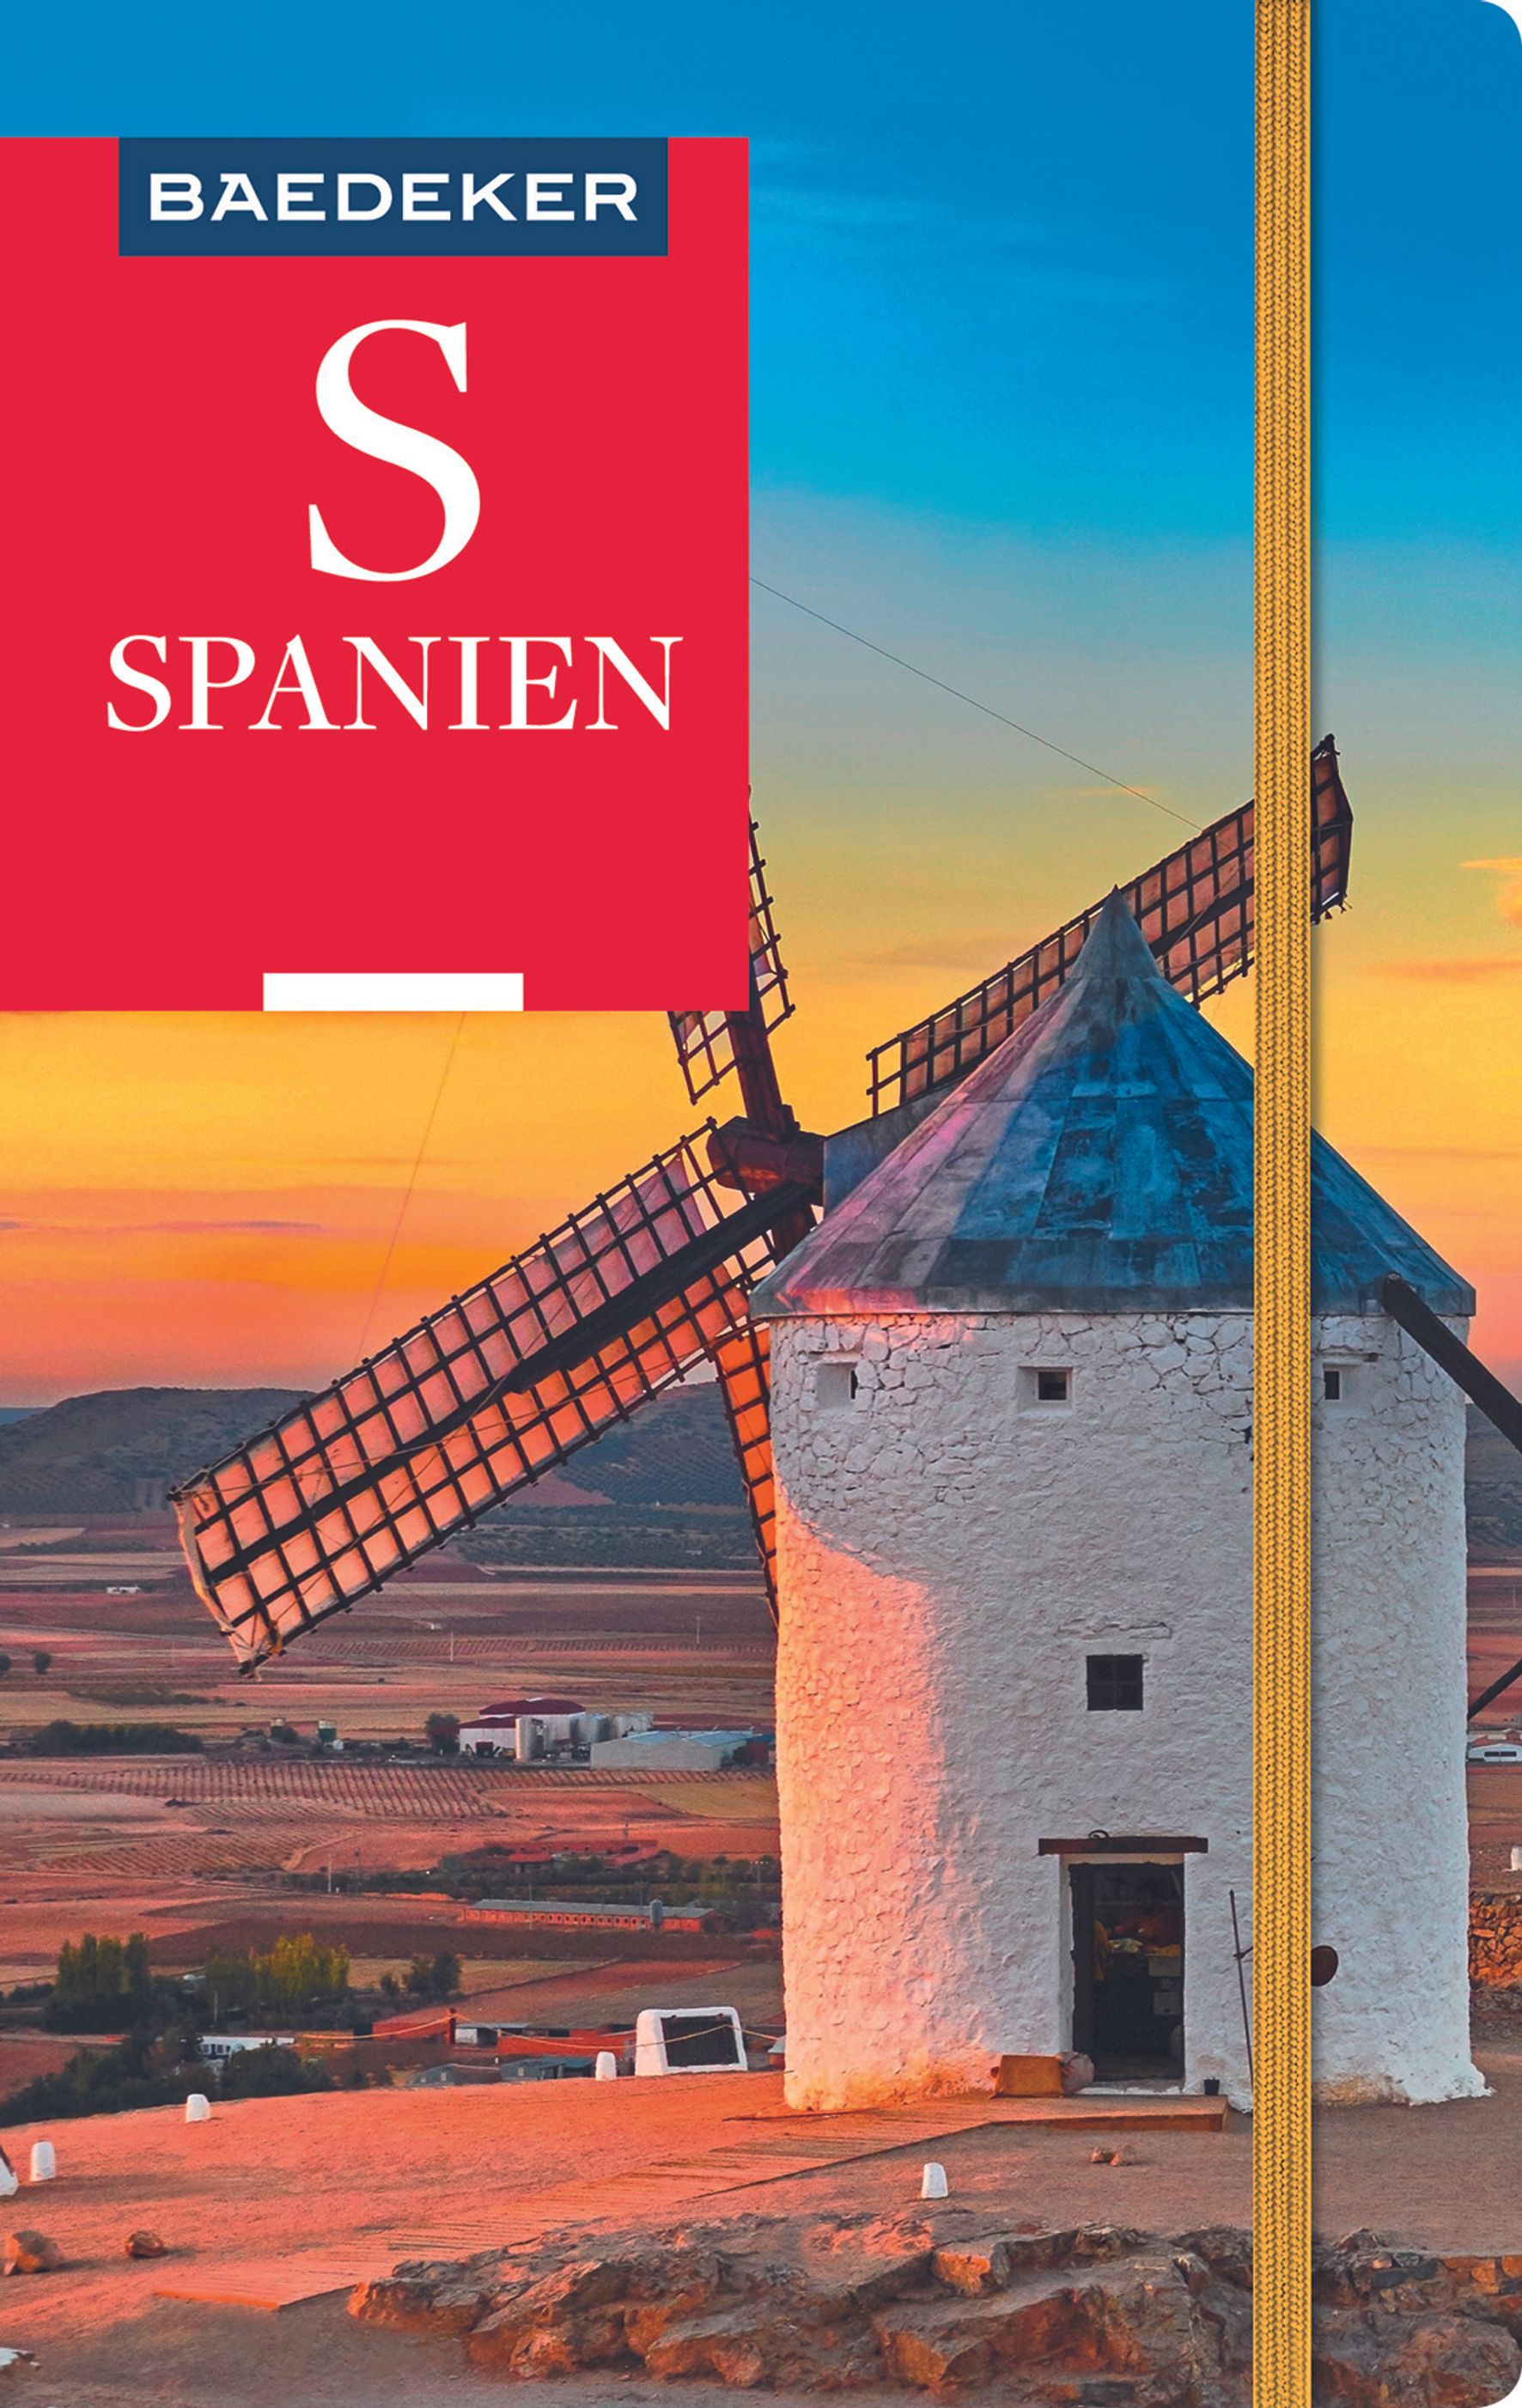 Baedeker Spanien (eBook)